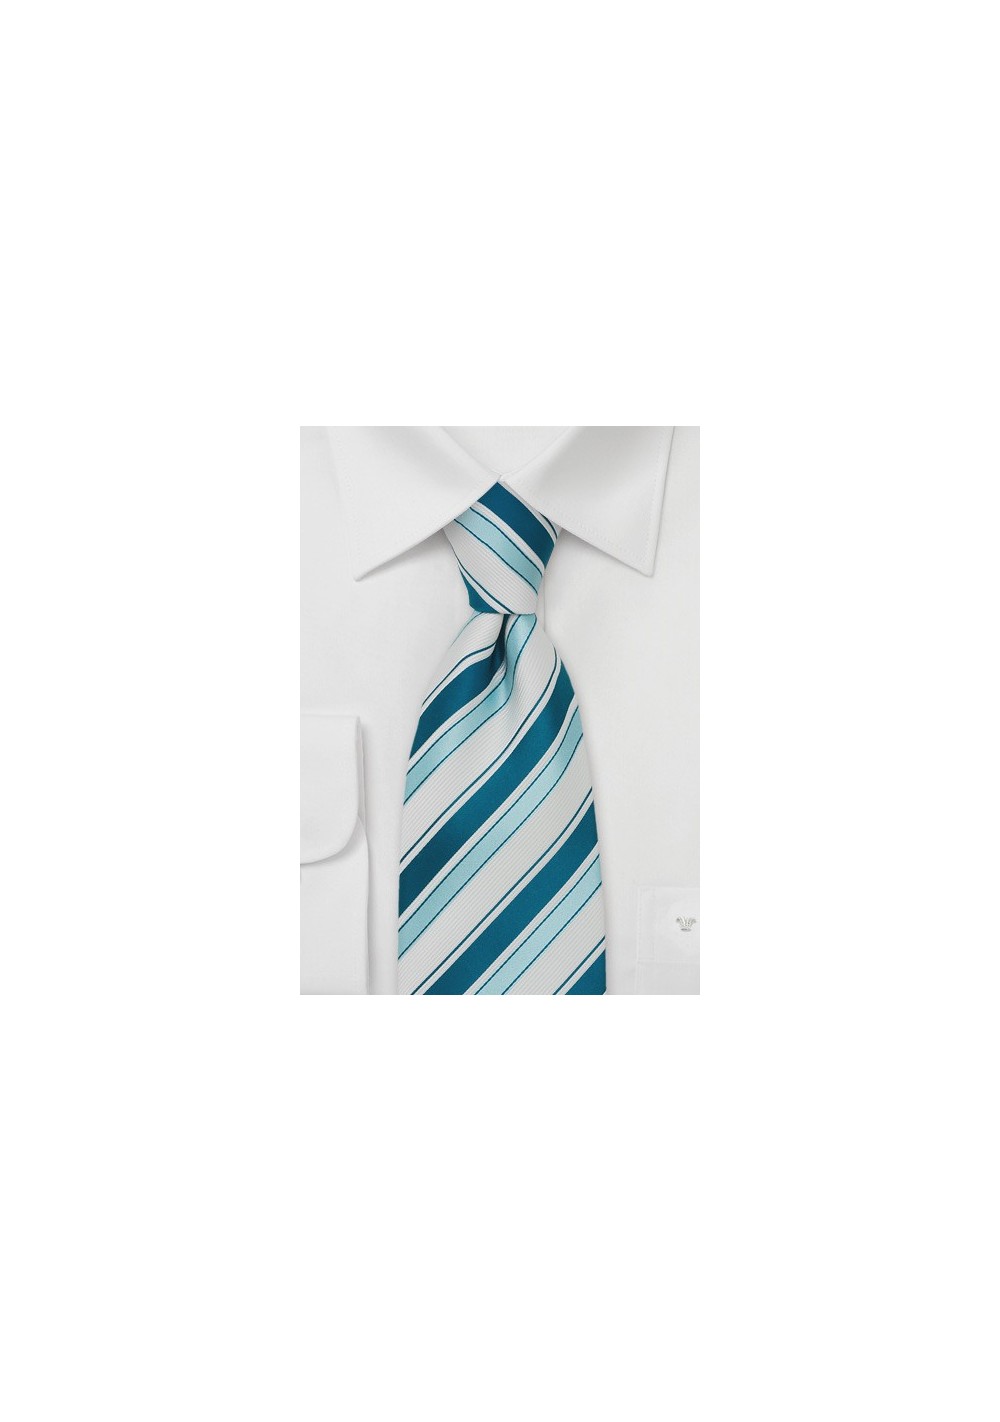 Turquise & White Striped Tie